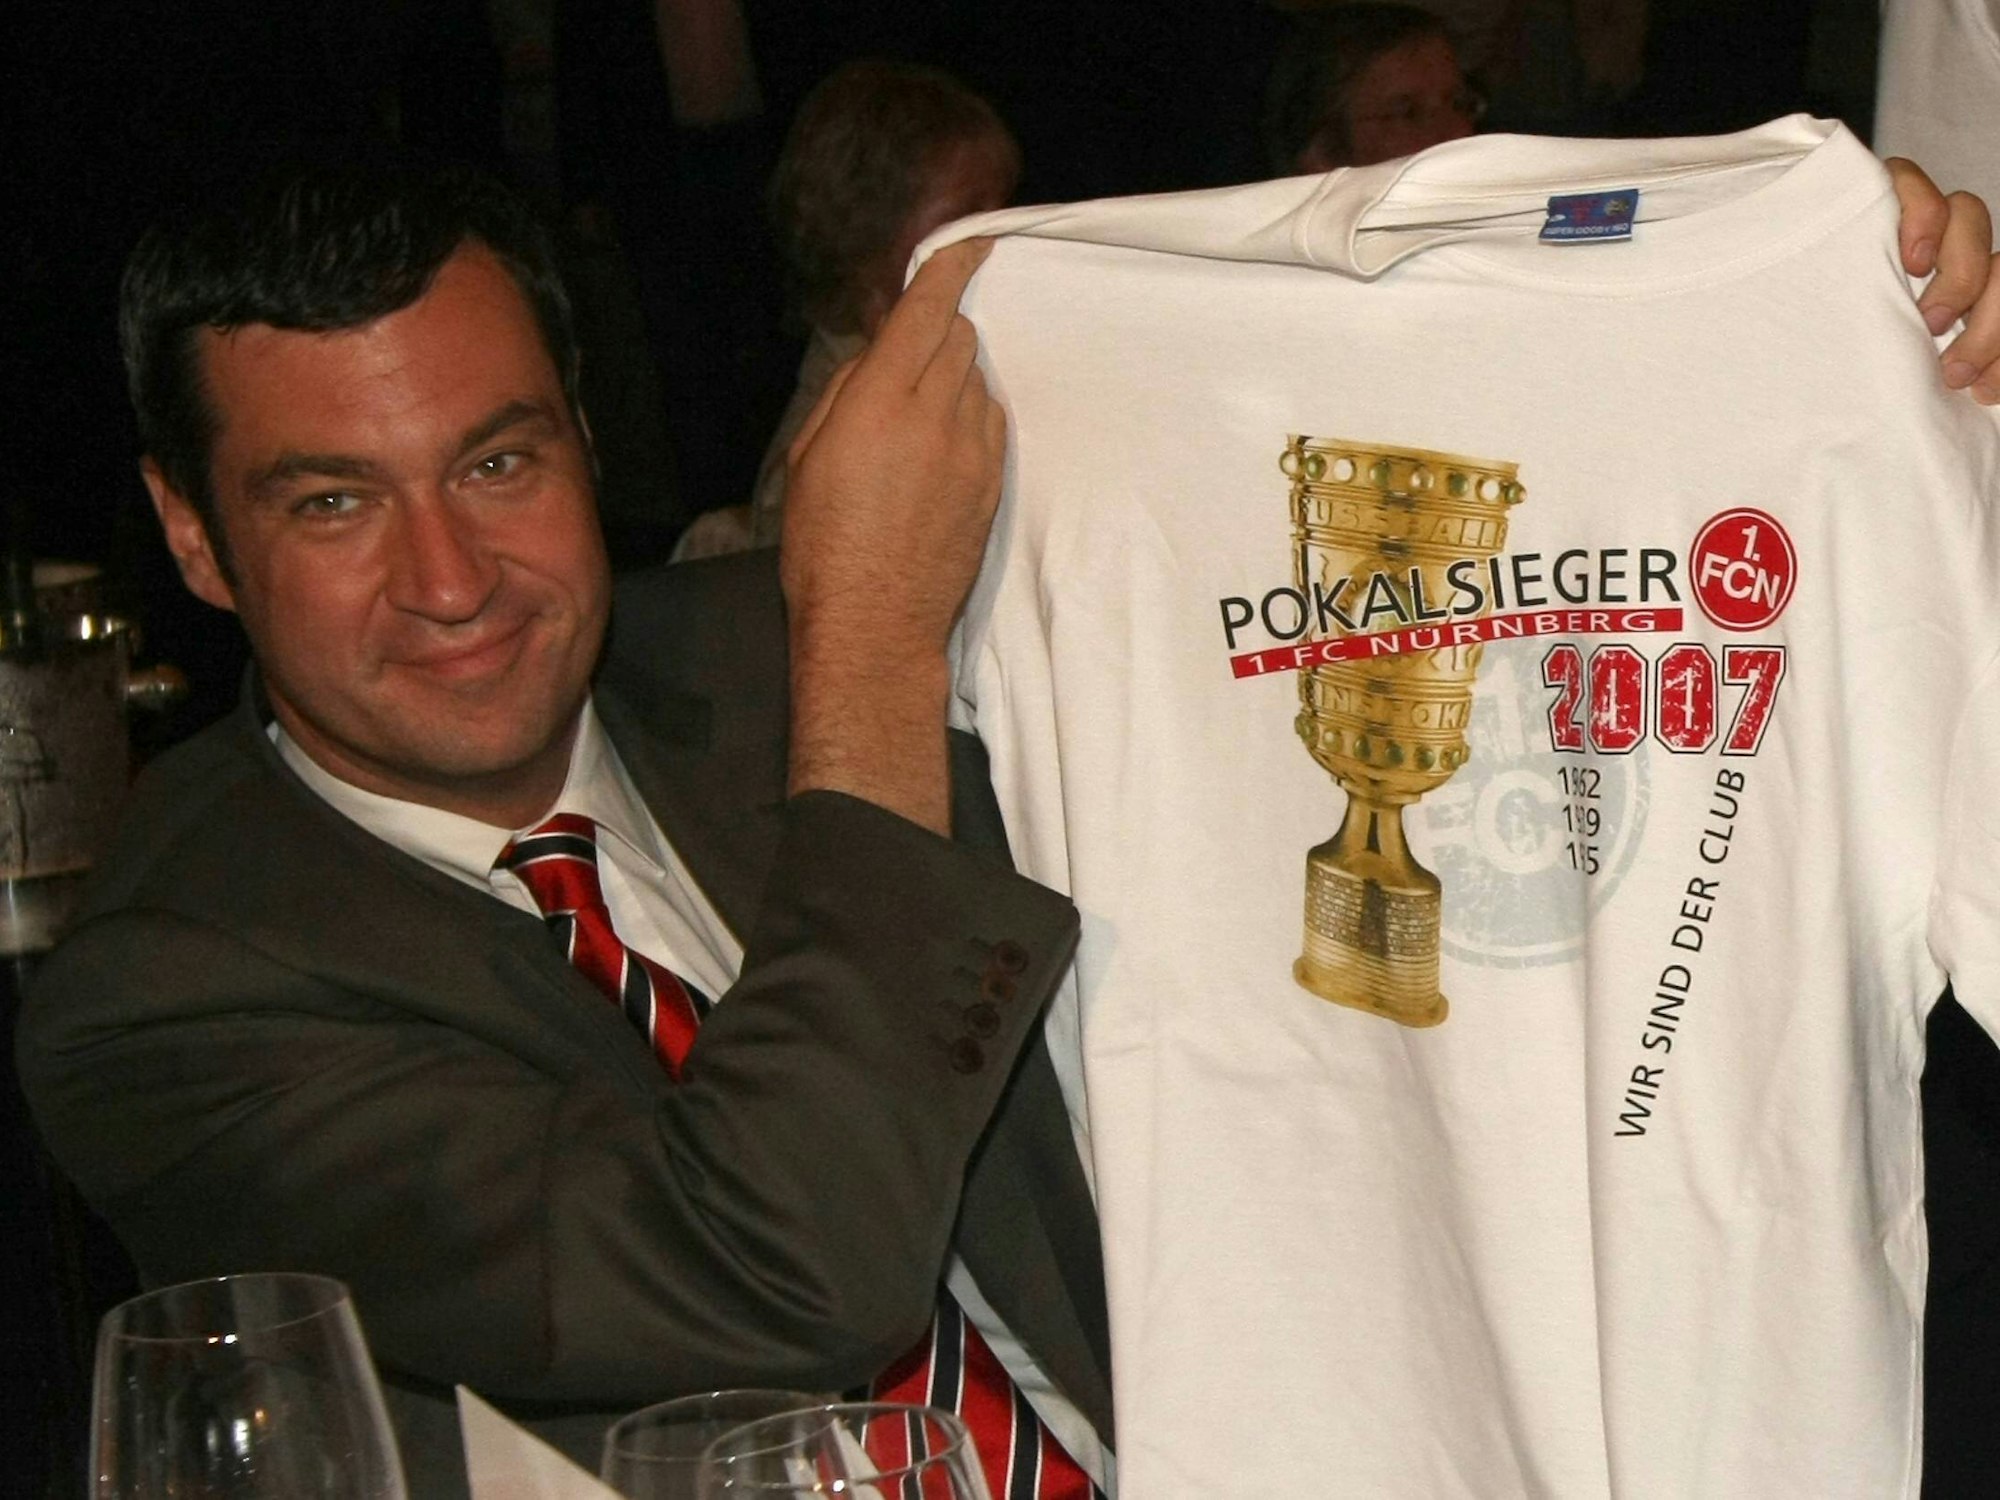 Markus Söder hält ein weißes T-Shirt hoch, auf dem Pokalsieger 2007 steht und der DFB-Pokal abgebildet ist.